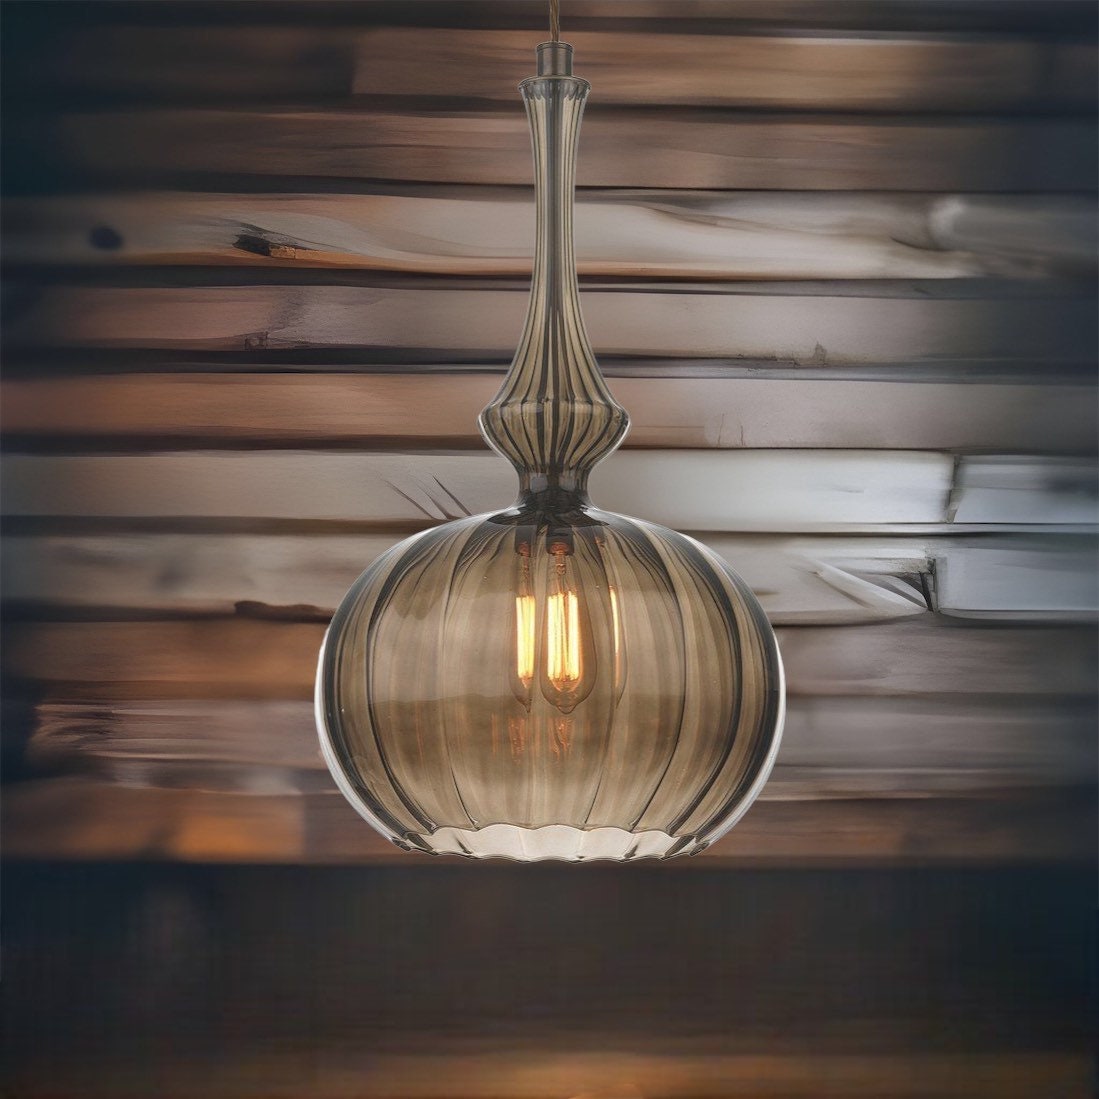 hanging lights for home decor | pendant lights for kitchen Islands | chandelier lighting | light fixture for room decor | pendant lighting